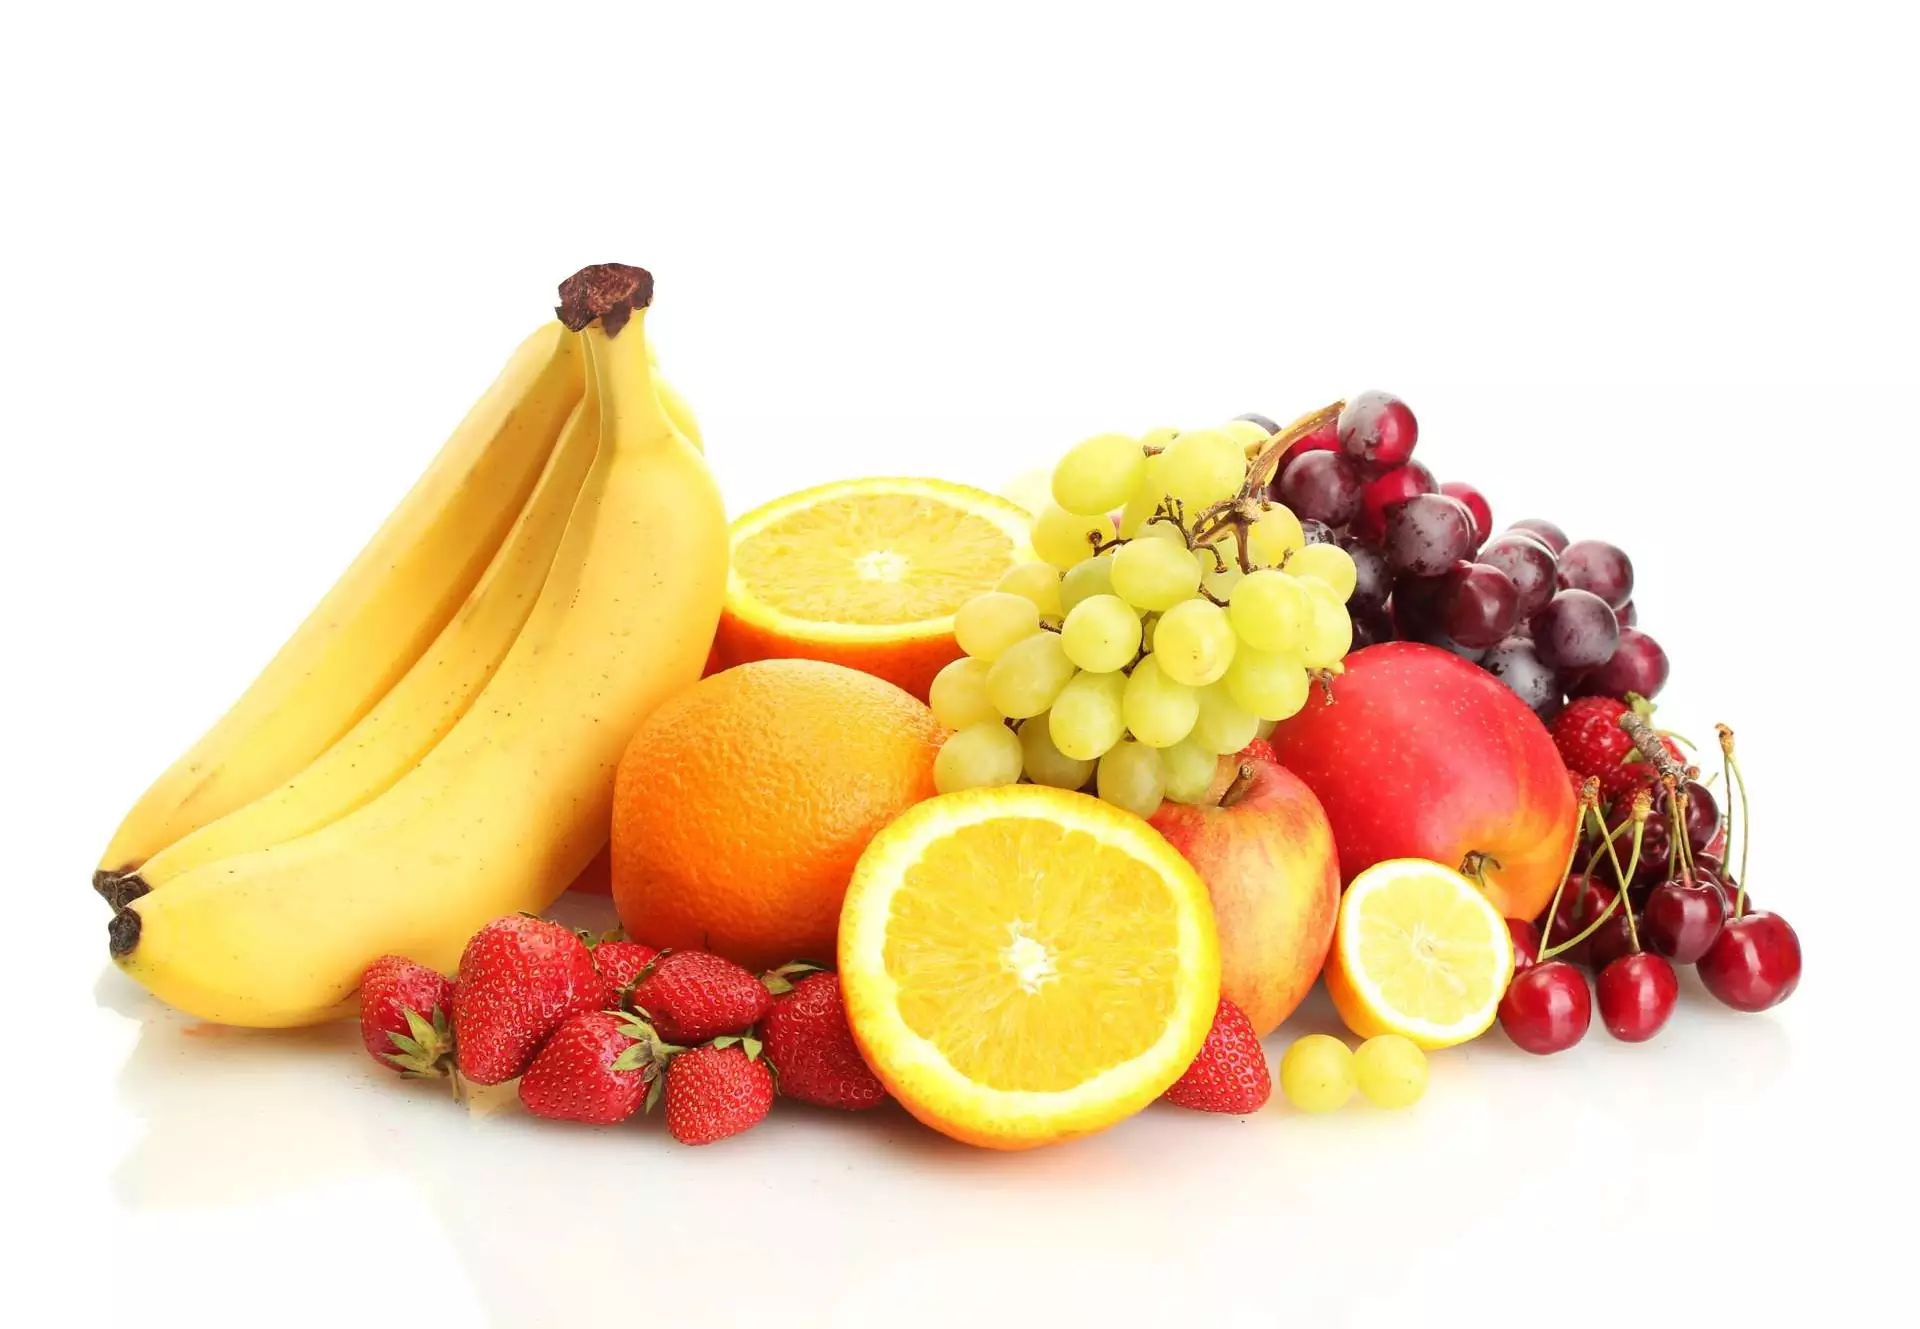 A e dini frutat janë shumë të shëndetshme?